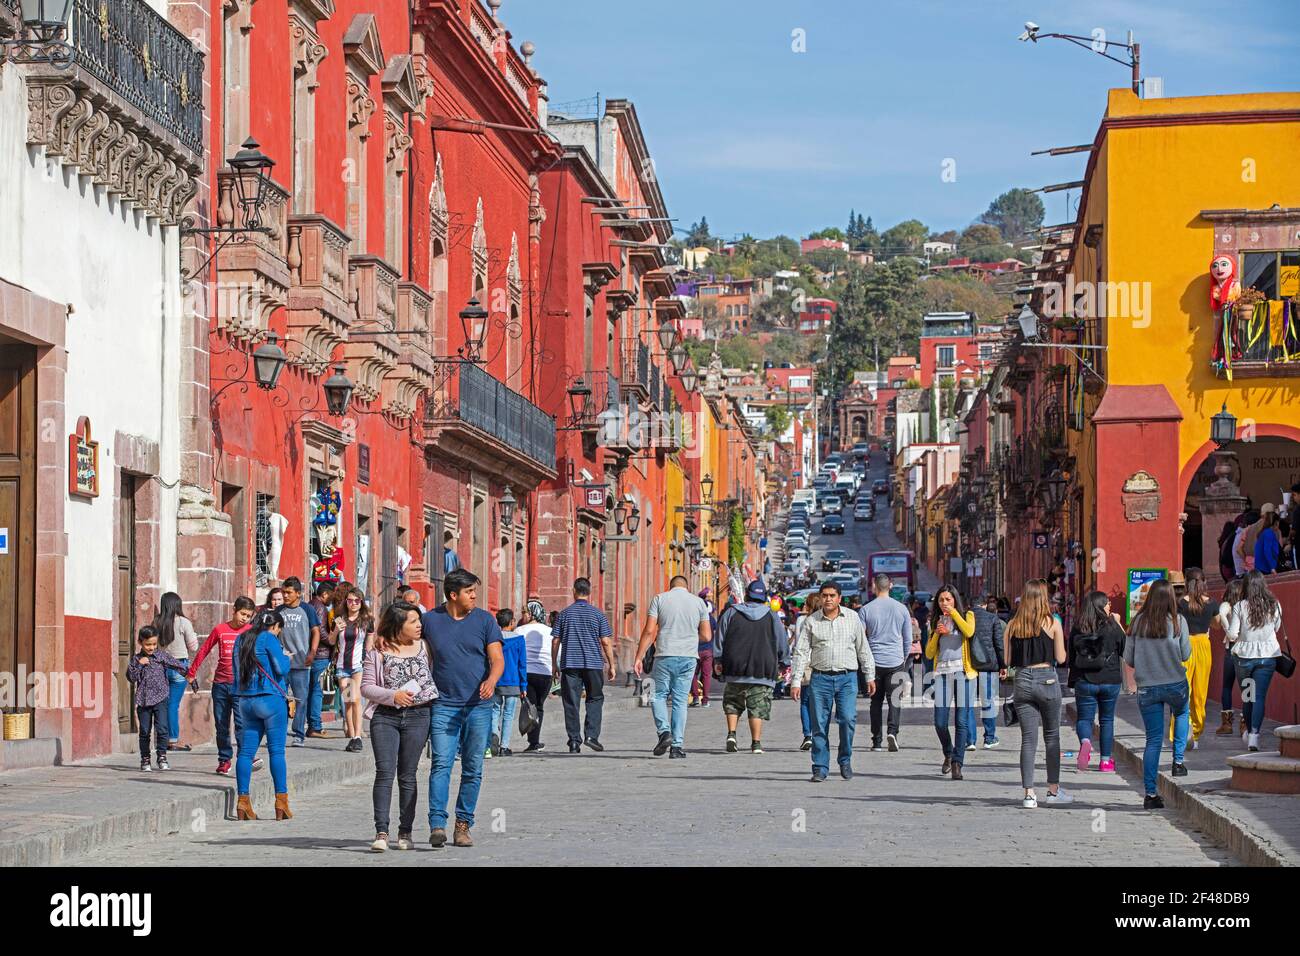 Les touristes mexicains marchant dans la rue avec des maisons colorées, des restaurants et des magasins dans la ville de San Miguel de Allende, Guanajuato, Mexique central Banque D'Images